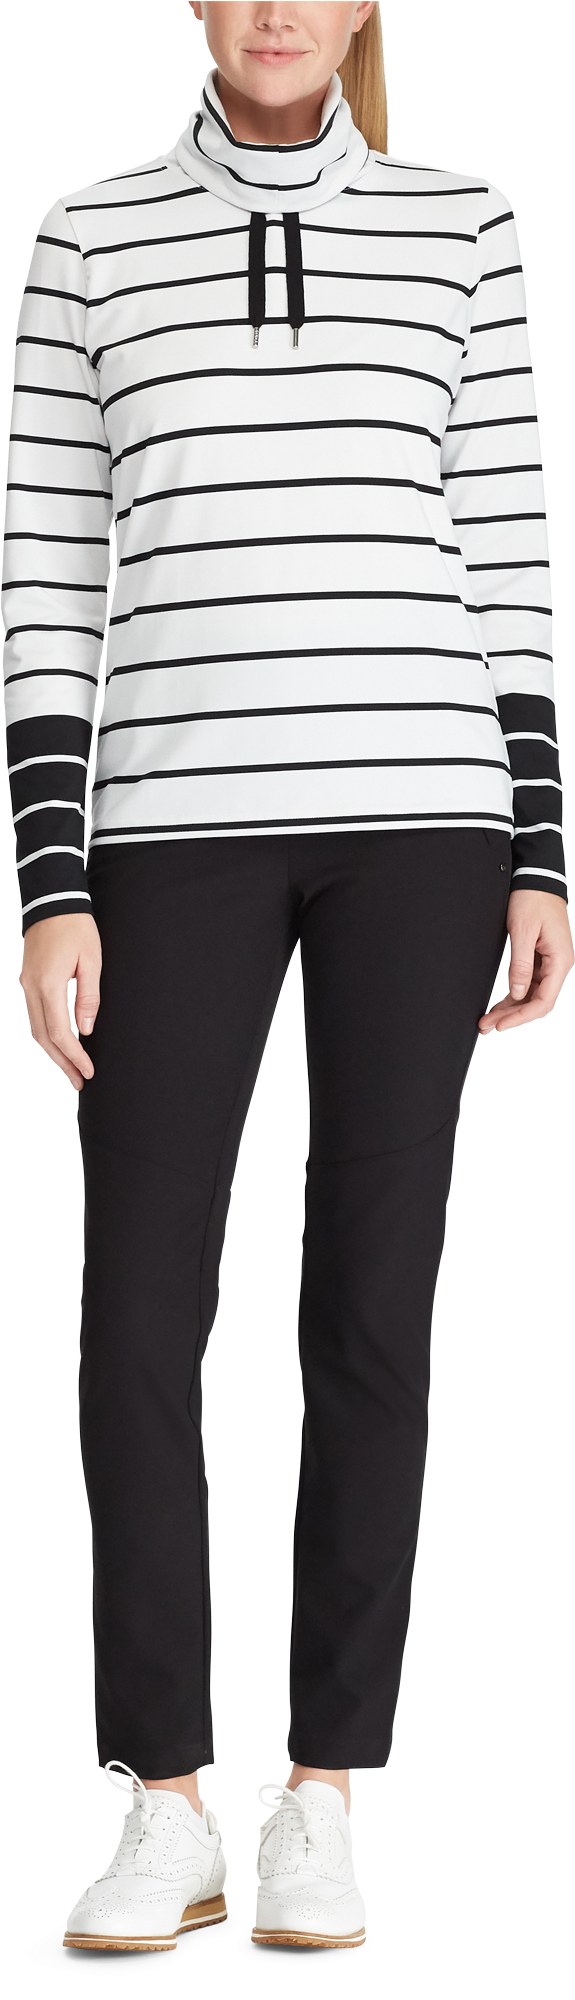 Striped Turtleneck Sweaterand Black Pants Fashion PNG